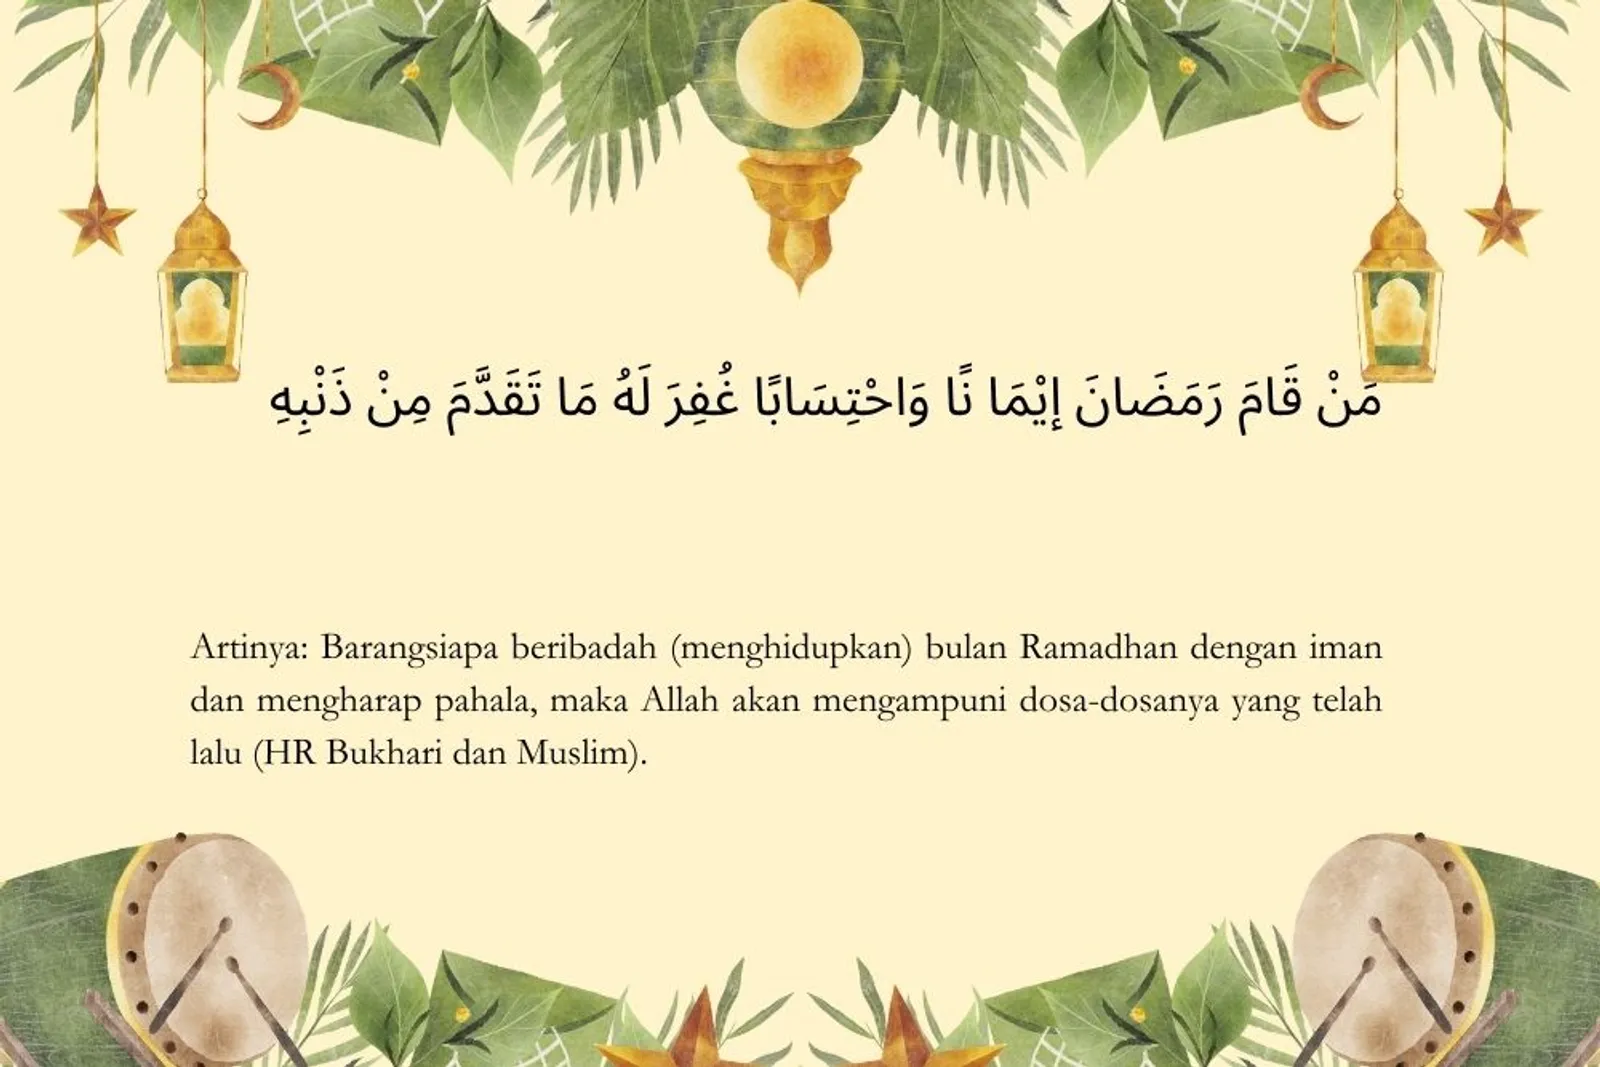 10 Keistimewaan Bulan Ramadan, Wajib Kamu Amalkan